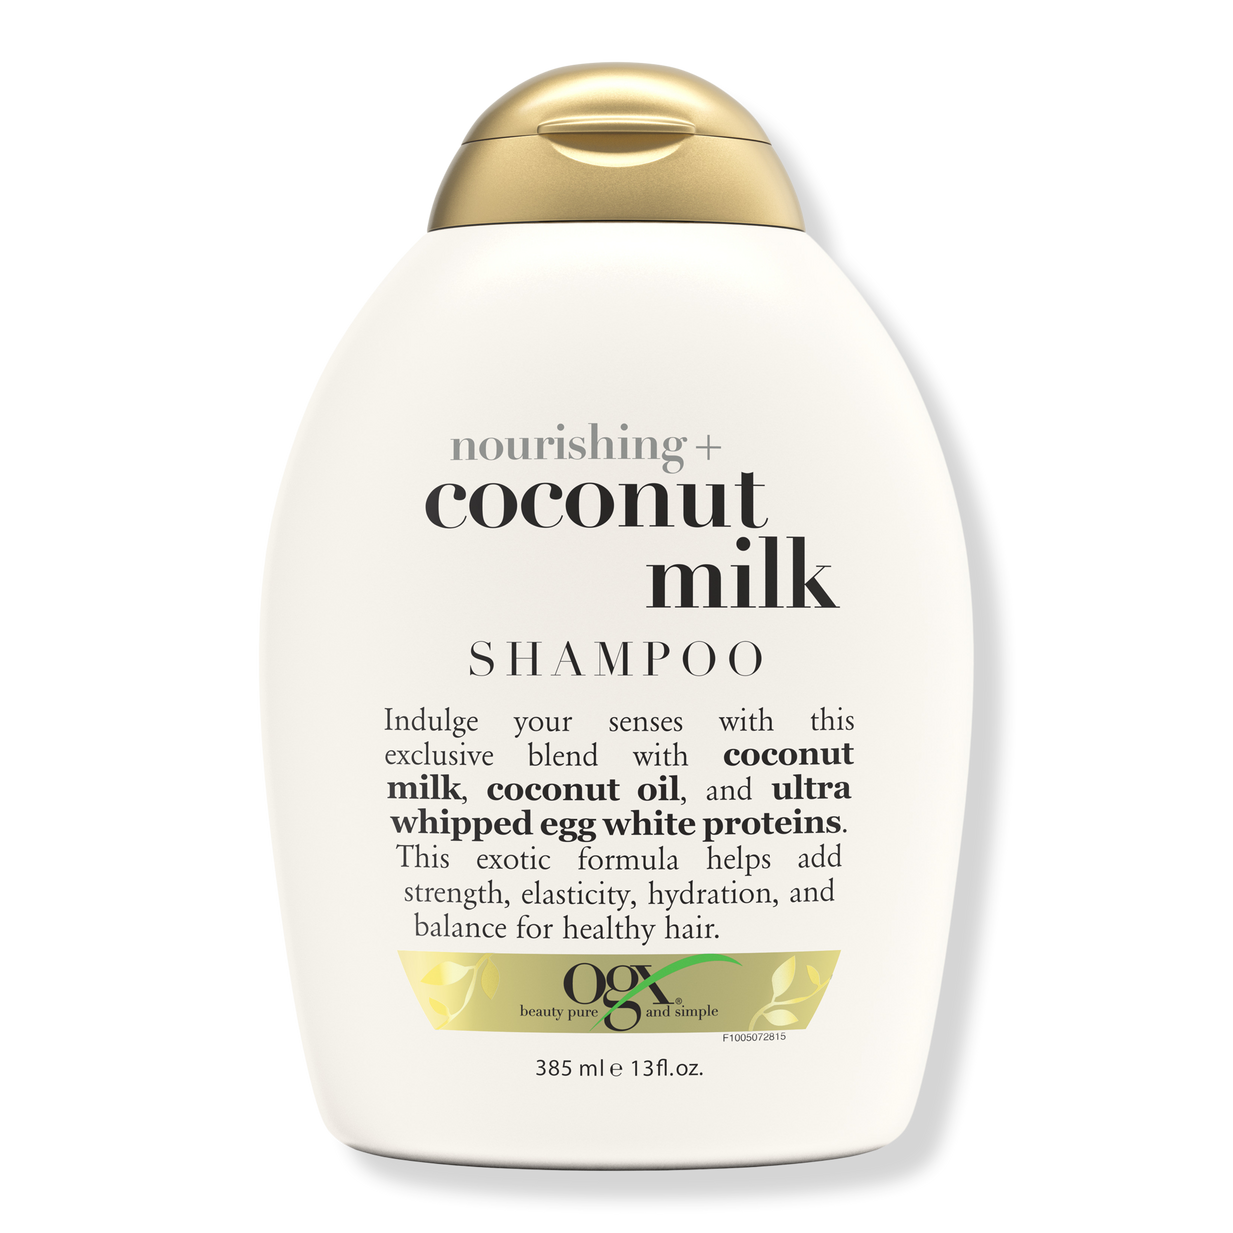 Atlantic sukker udstrømning Nourishing + Coconut Milk Shampoo - OGX | Ulta Beauty